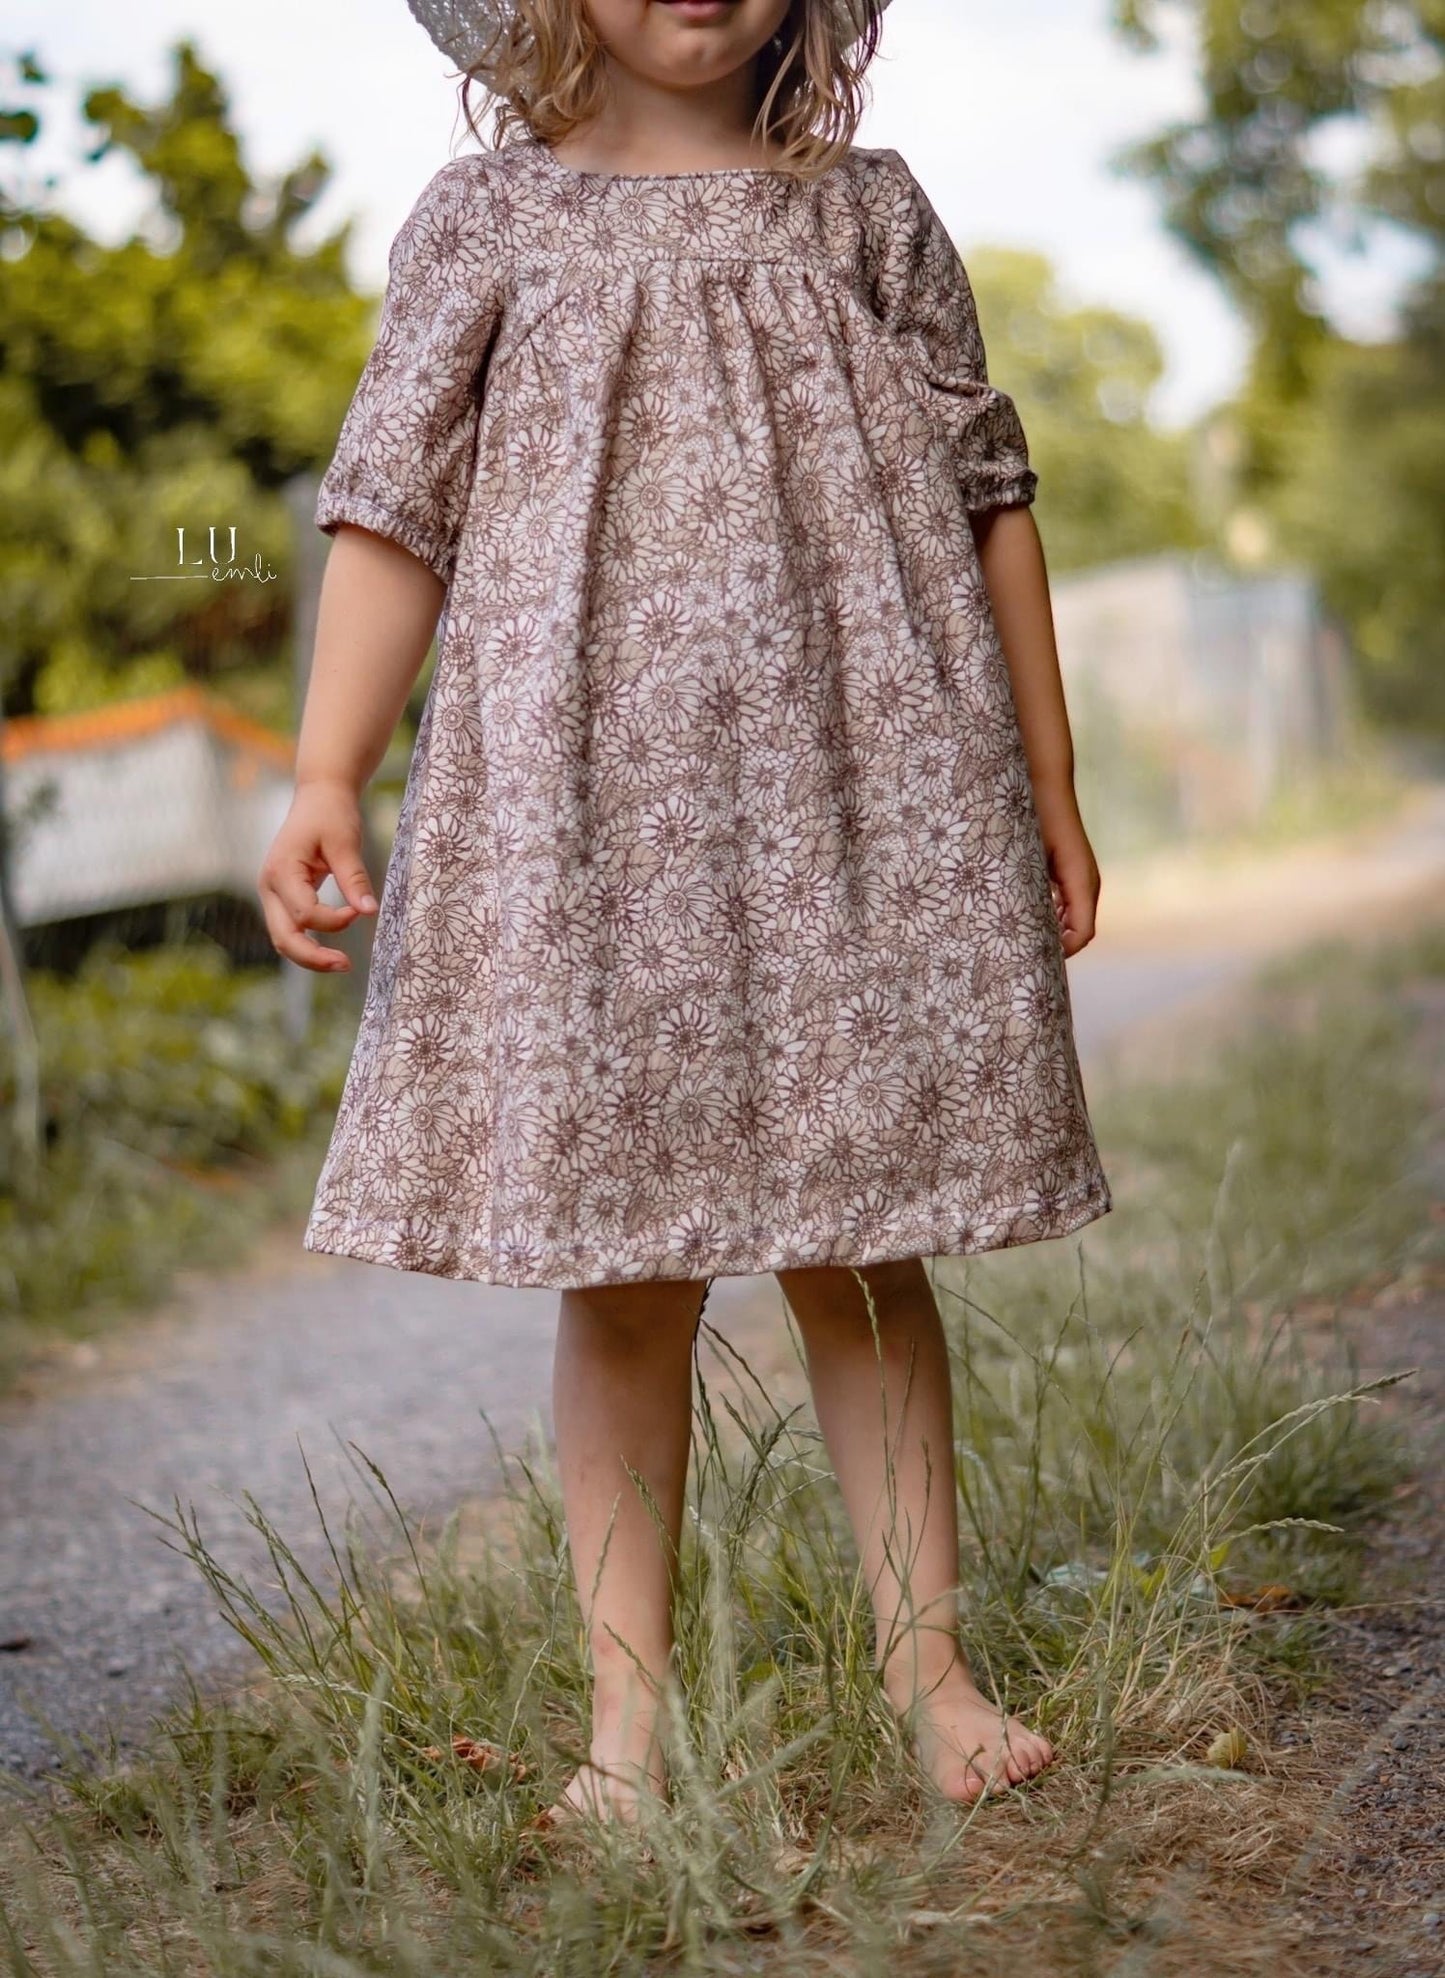 Schnittmuster - Kleid einer Träumerin - Gr. 80-128 - Digitaler Download